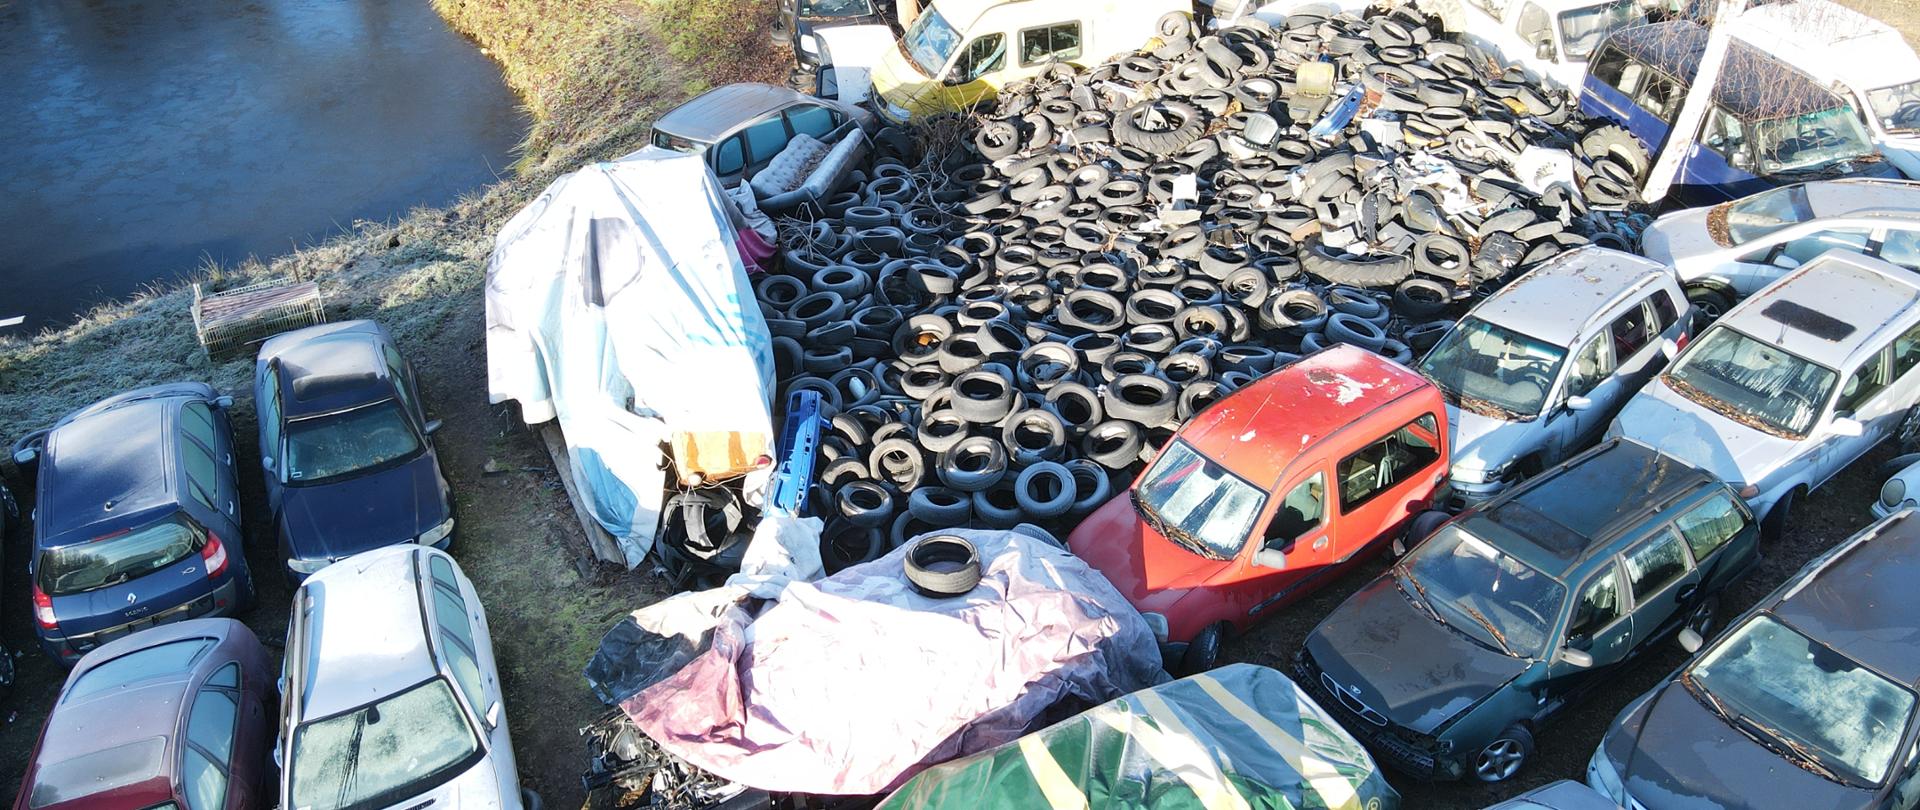 Widok z góry na zgromadzone odpady w postaci zdemontowanych w różnym stopniu pojazdów i zużytych opon 